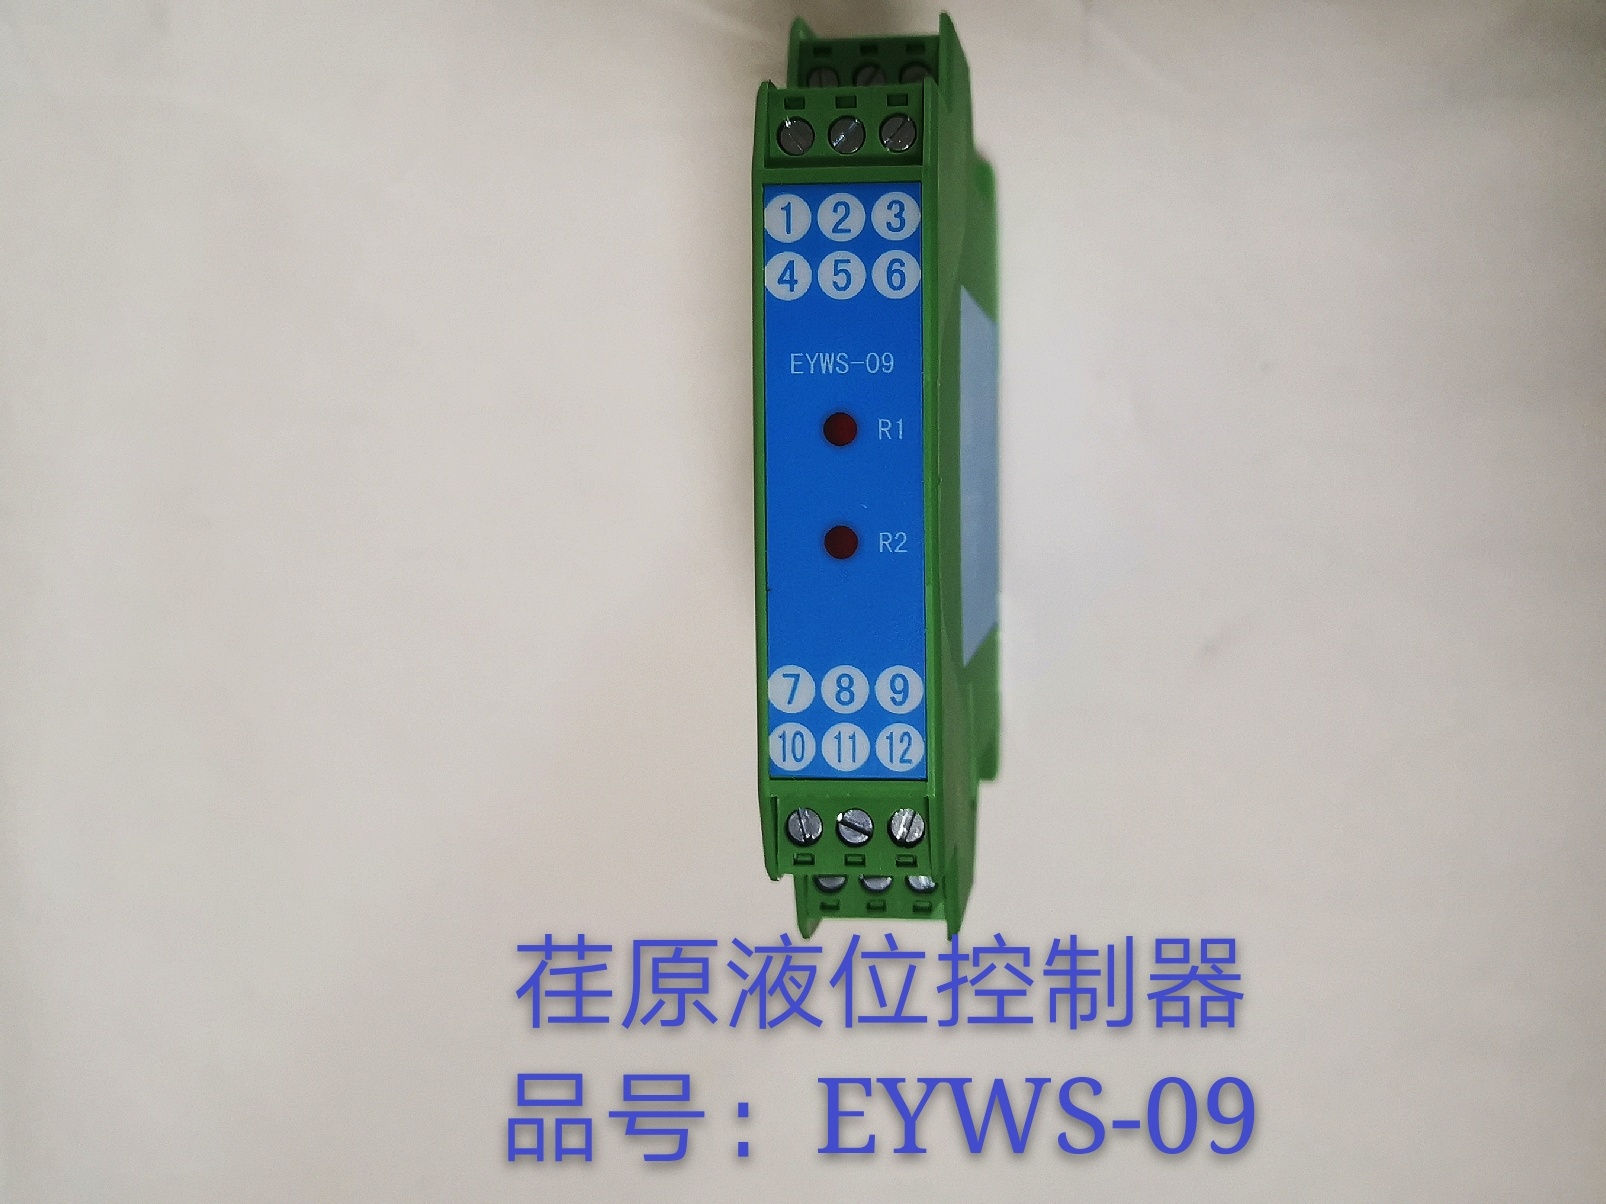 荏原液位控制器 品號: EYWS-09